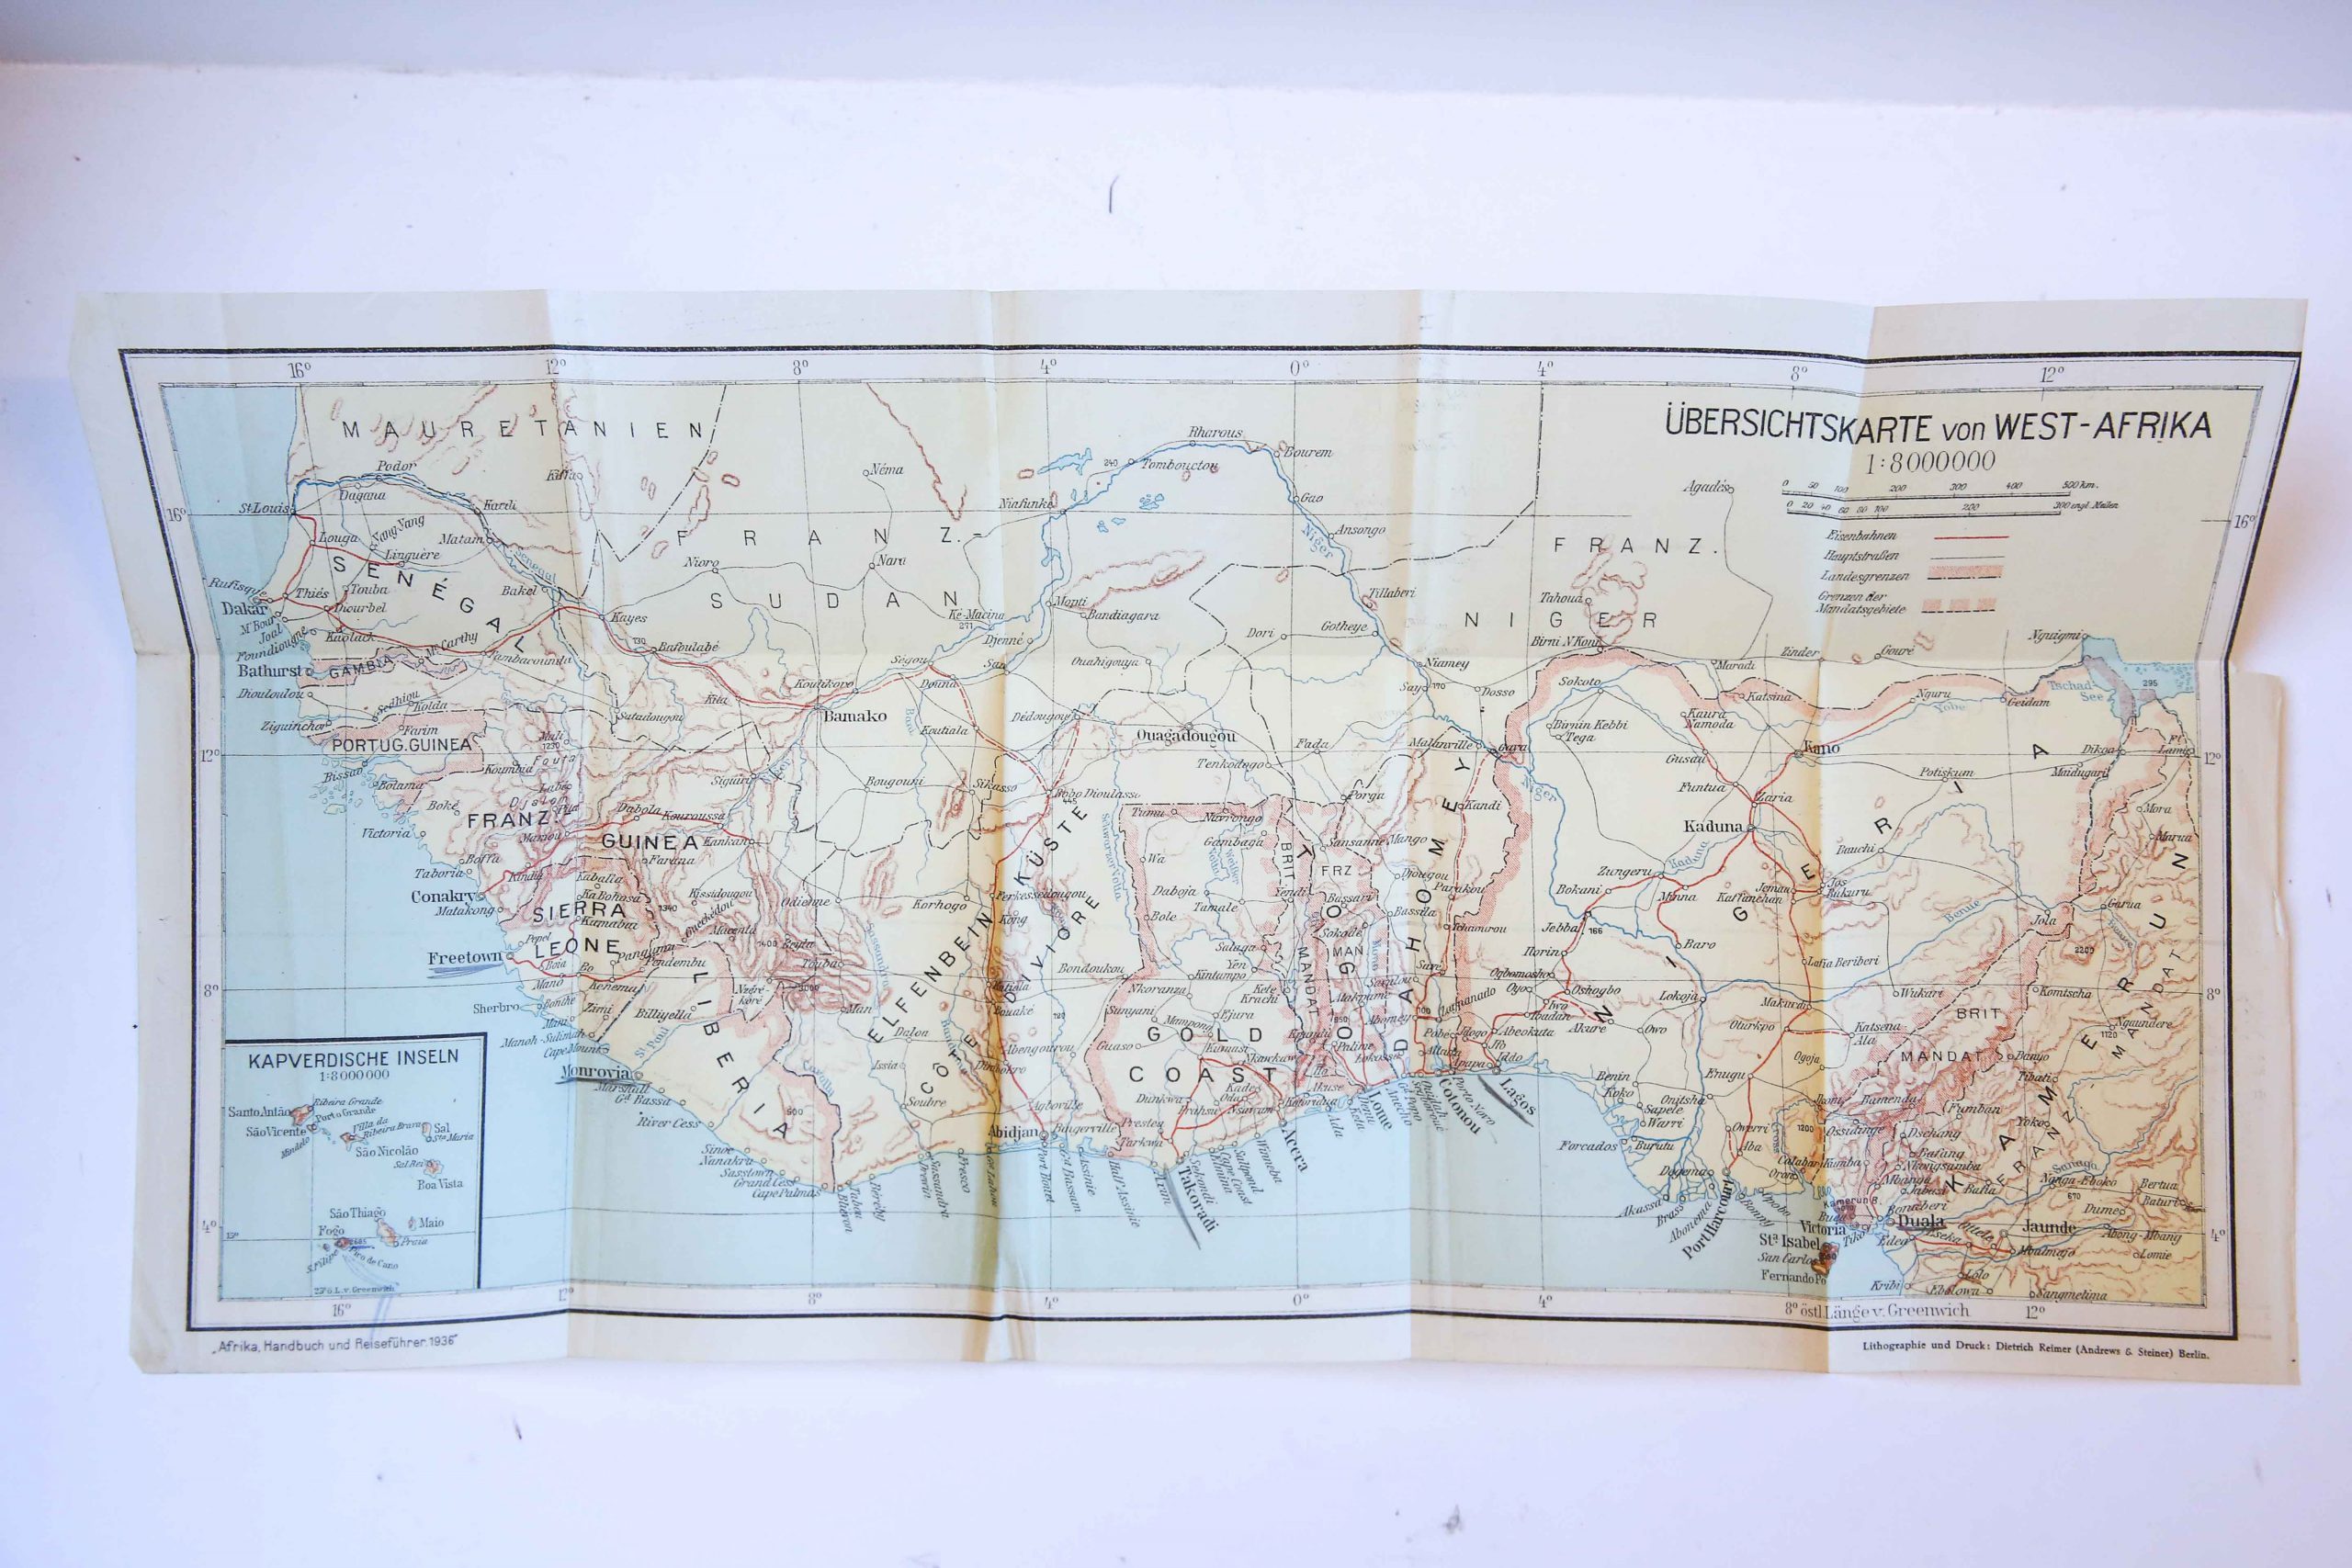 Cartography/Map: Übersichtkarte von West-Afrika. 1:8000000. 1 pp. In the left corner Kapverdische Inseln.